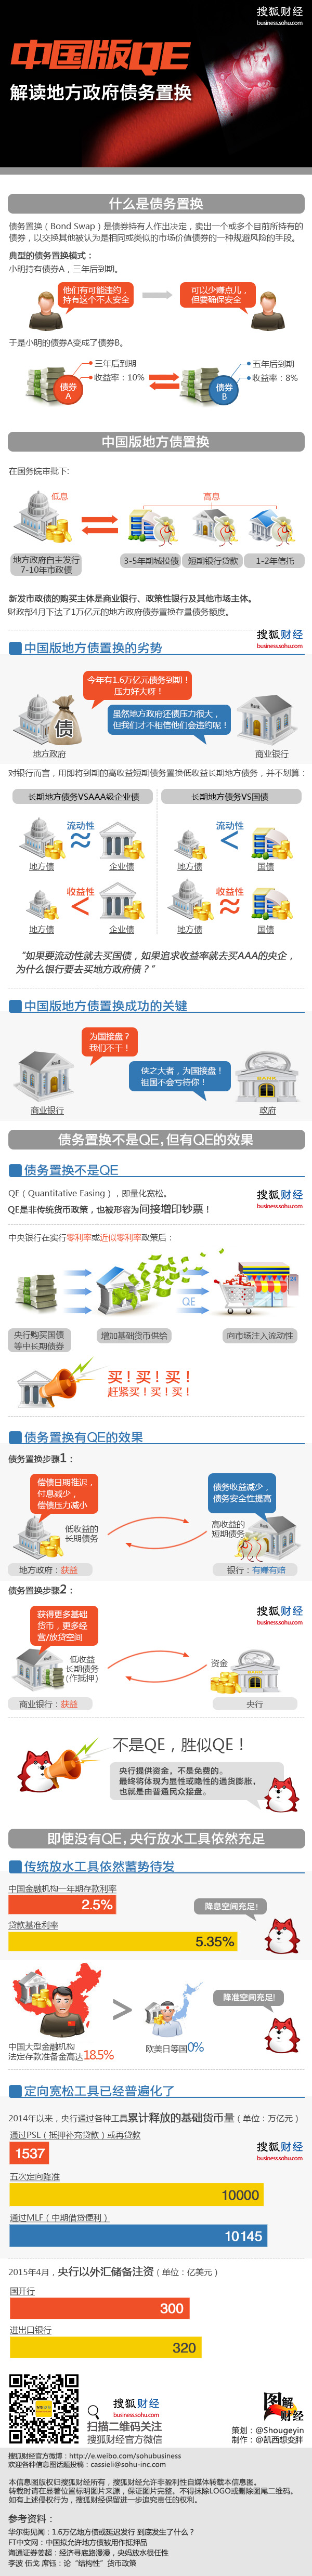 图解财经 231期： 中国版QE